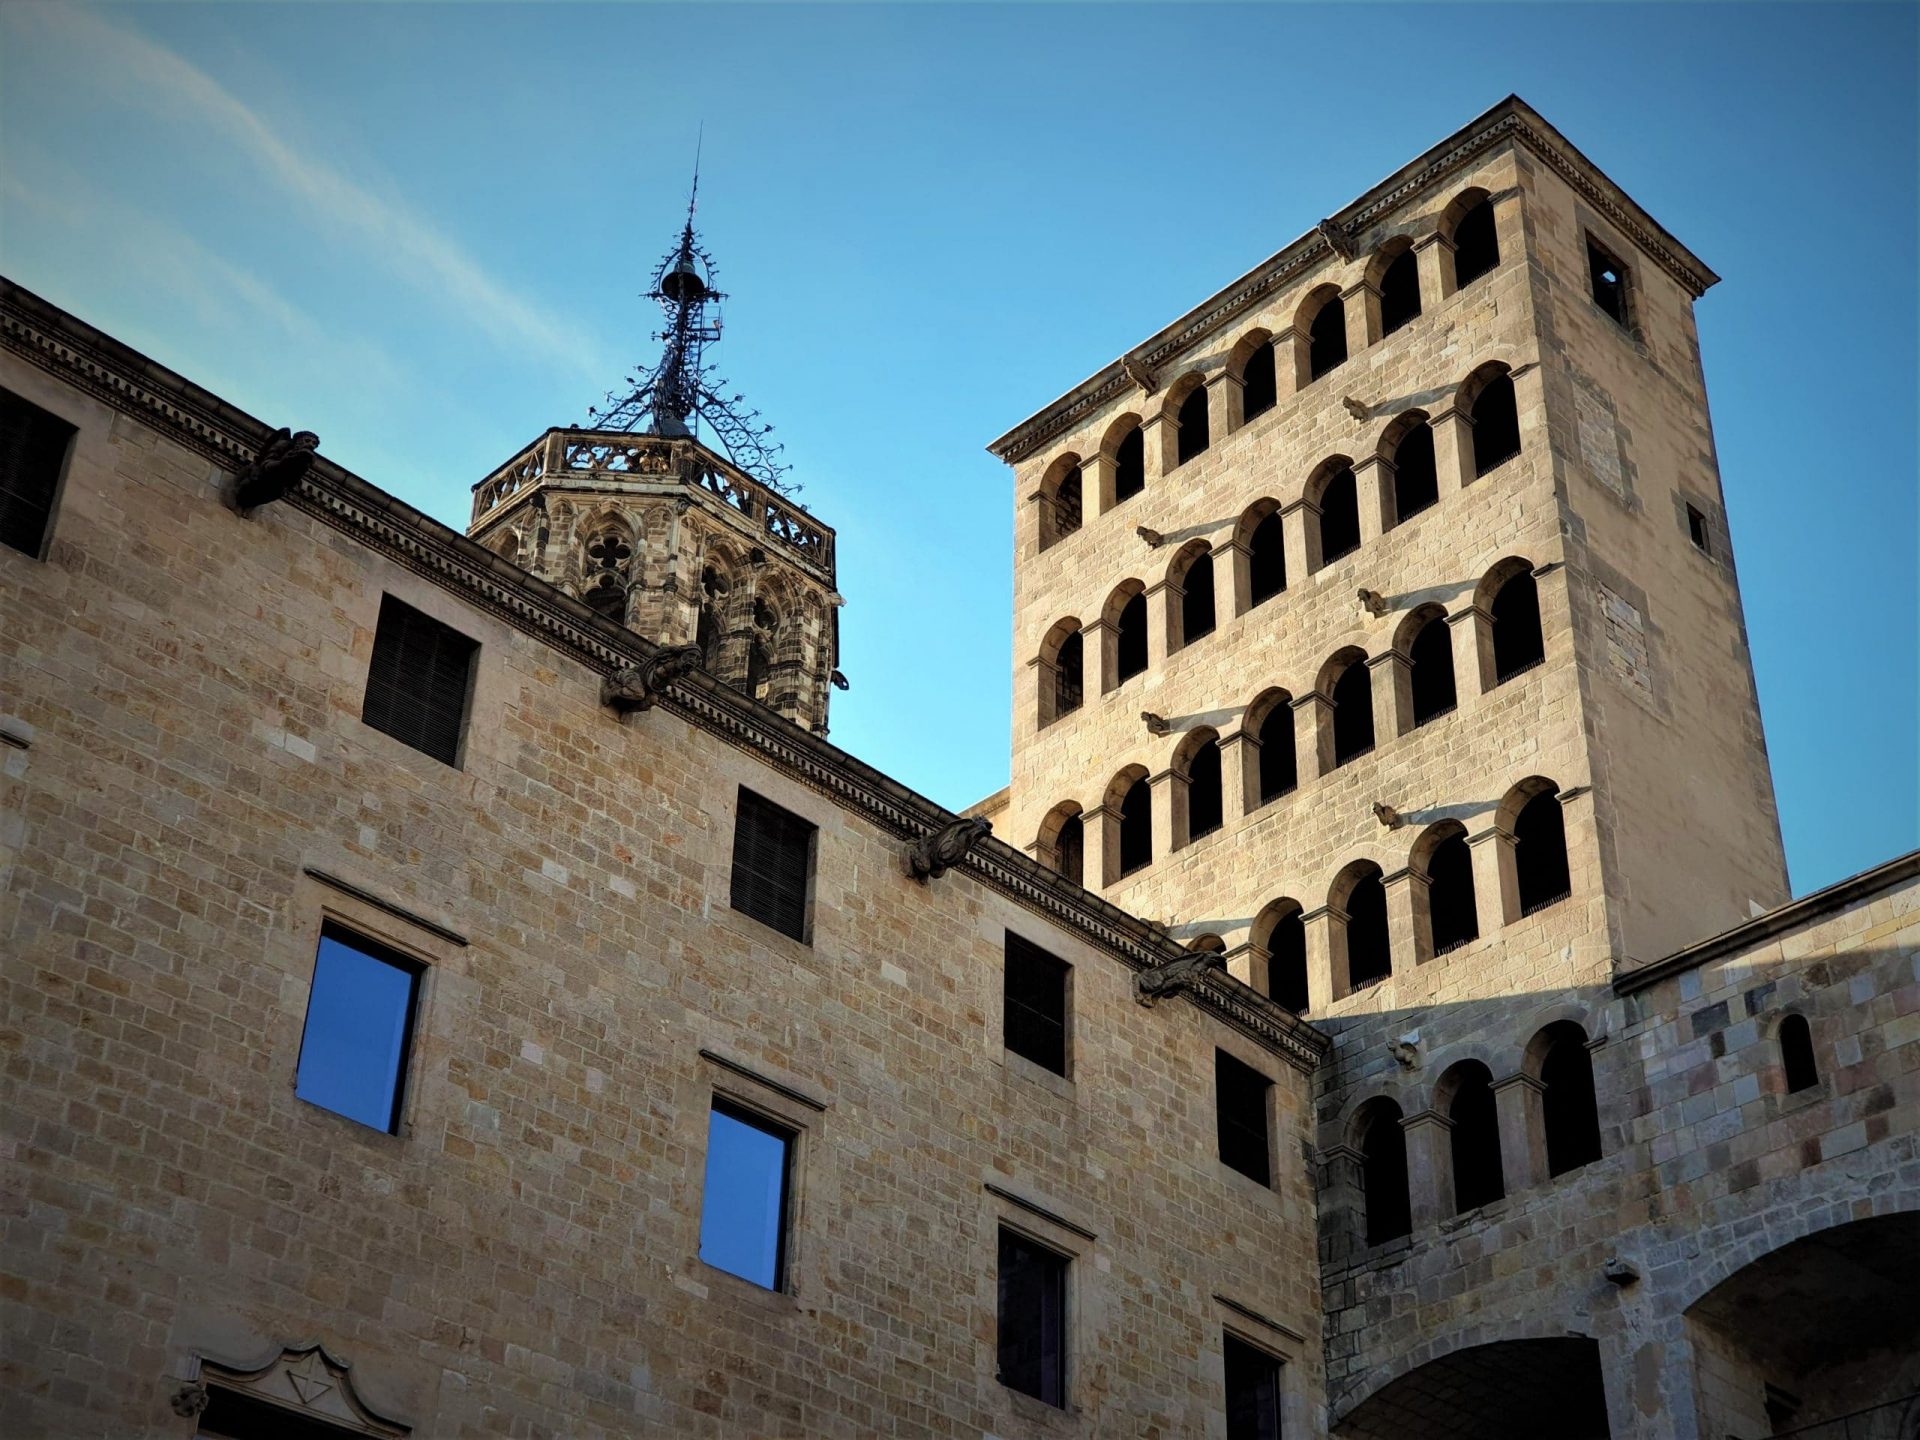 plaza del rey, arquitectura medieval de barcelona en el barrio gótico. 2021